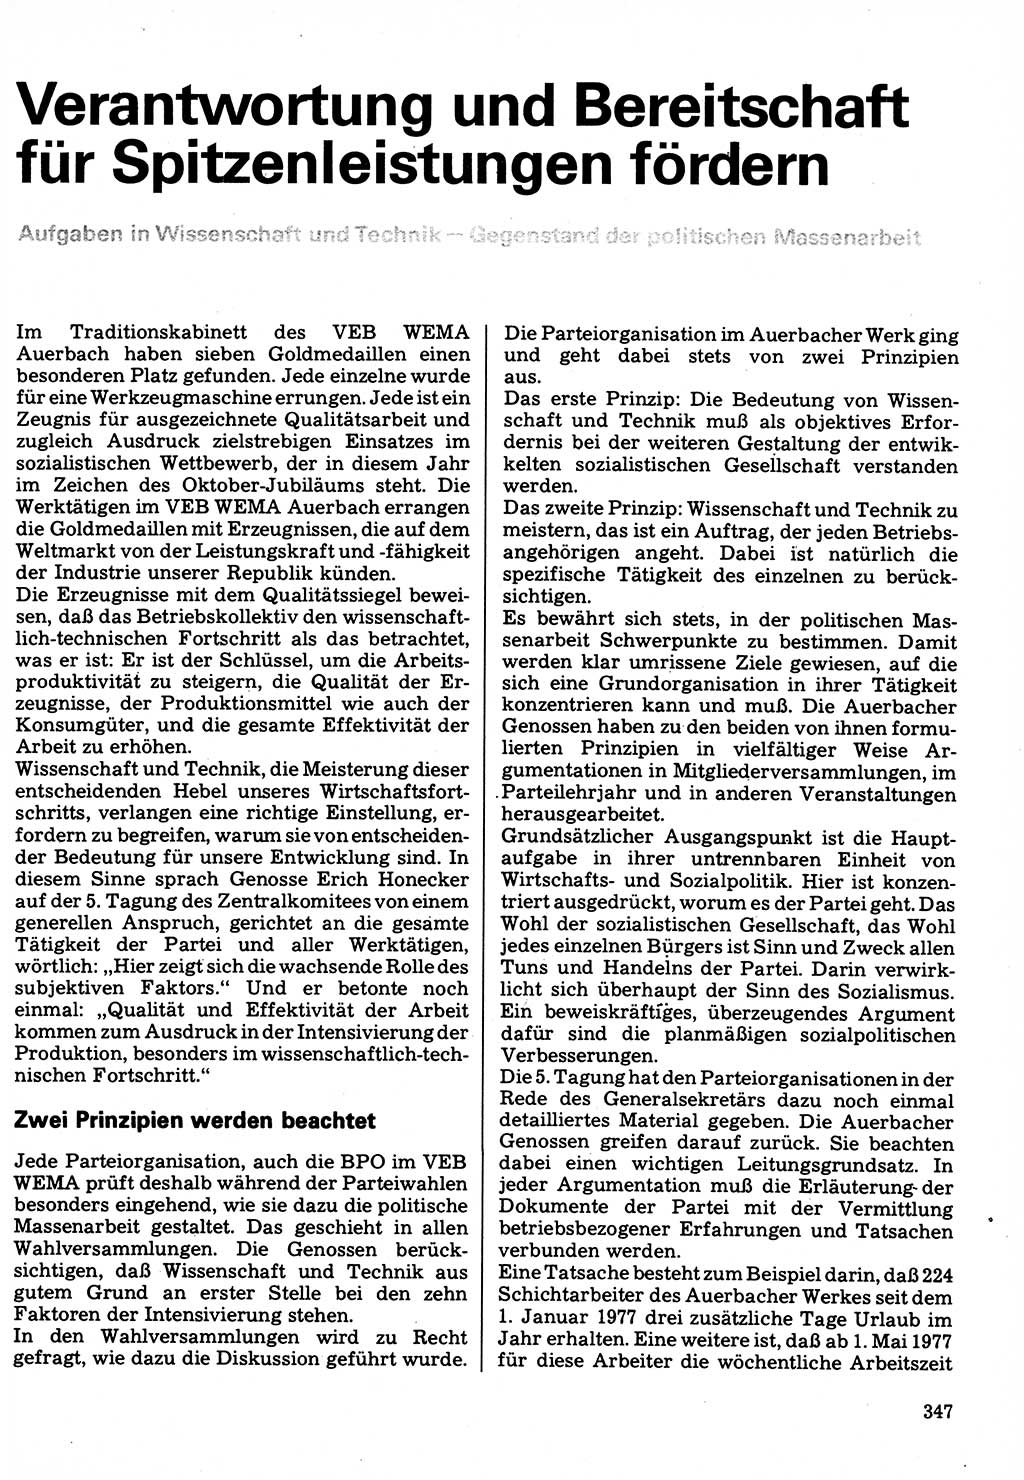 Neuer Weg (NW), Organ des Zentralkomitees (ZK) der SED (Sozialistische Einheitspartei Deutschlands) für Fragen des Parteilebens, 32. Jahrgang [Deutsche Demokratische Republik (DDR)] 1977, Seite 347 (NW ZK SED DDR 1977, S. 347)